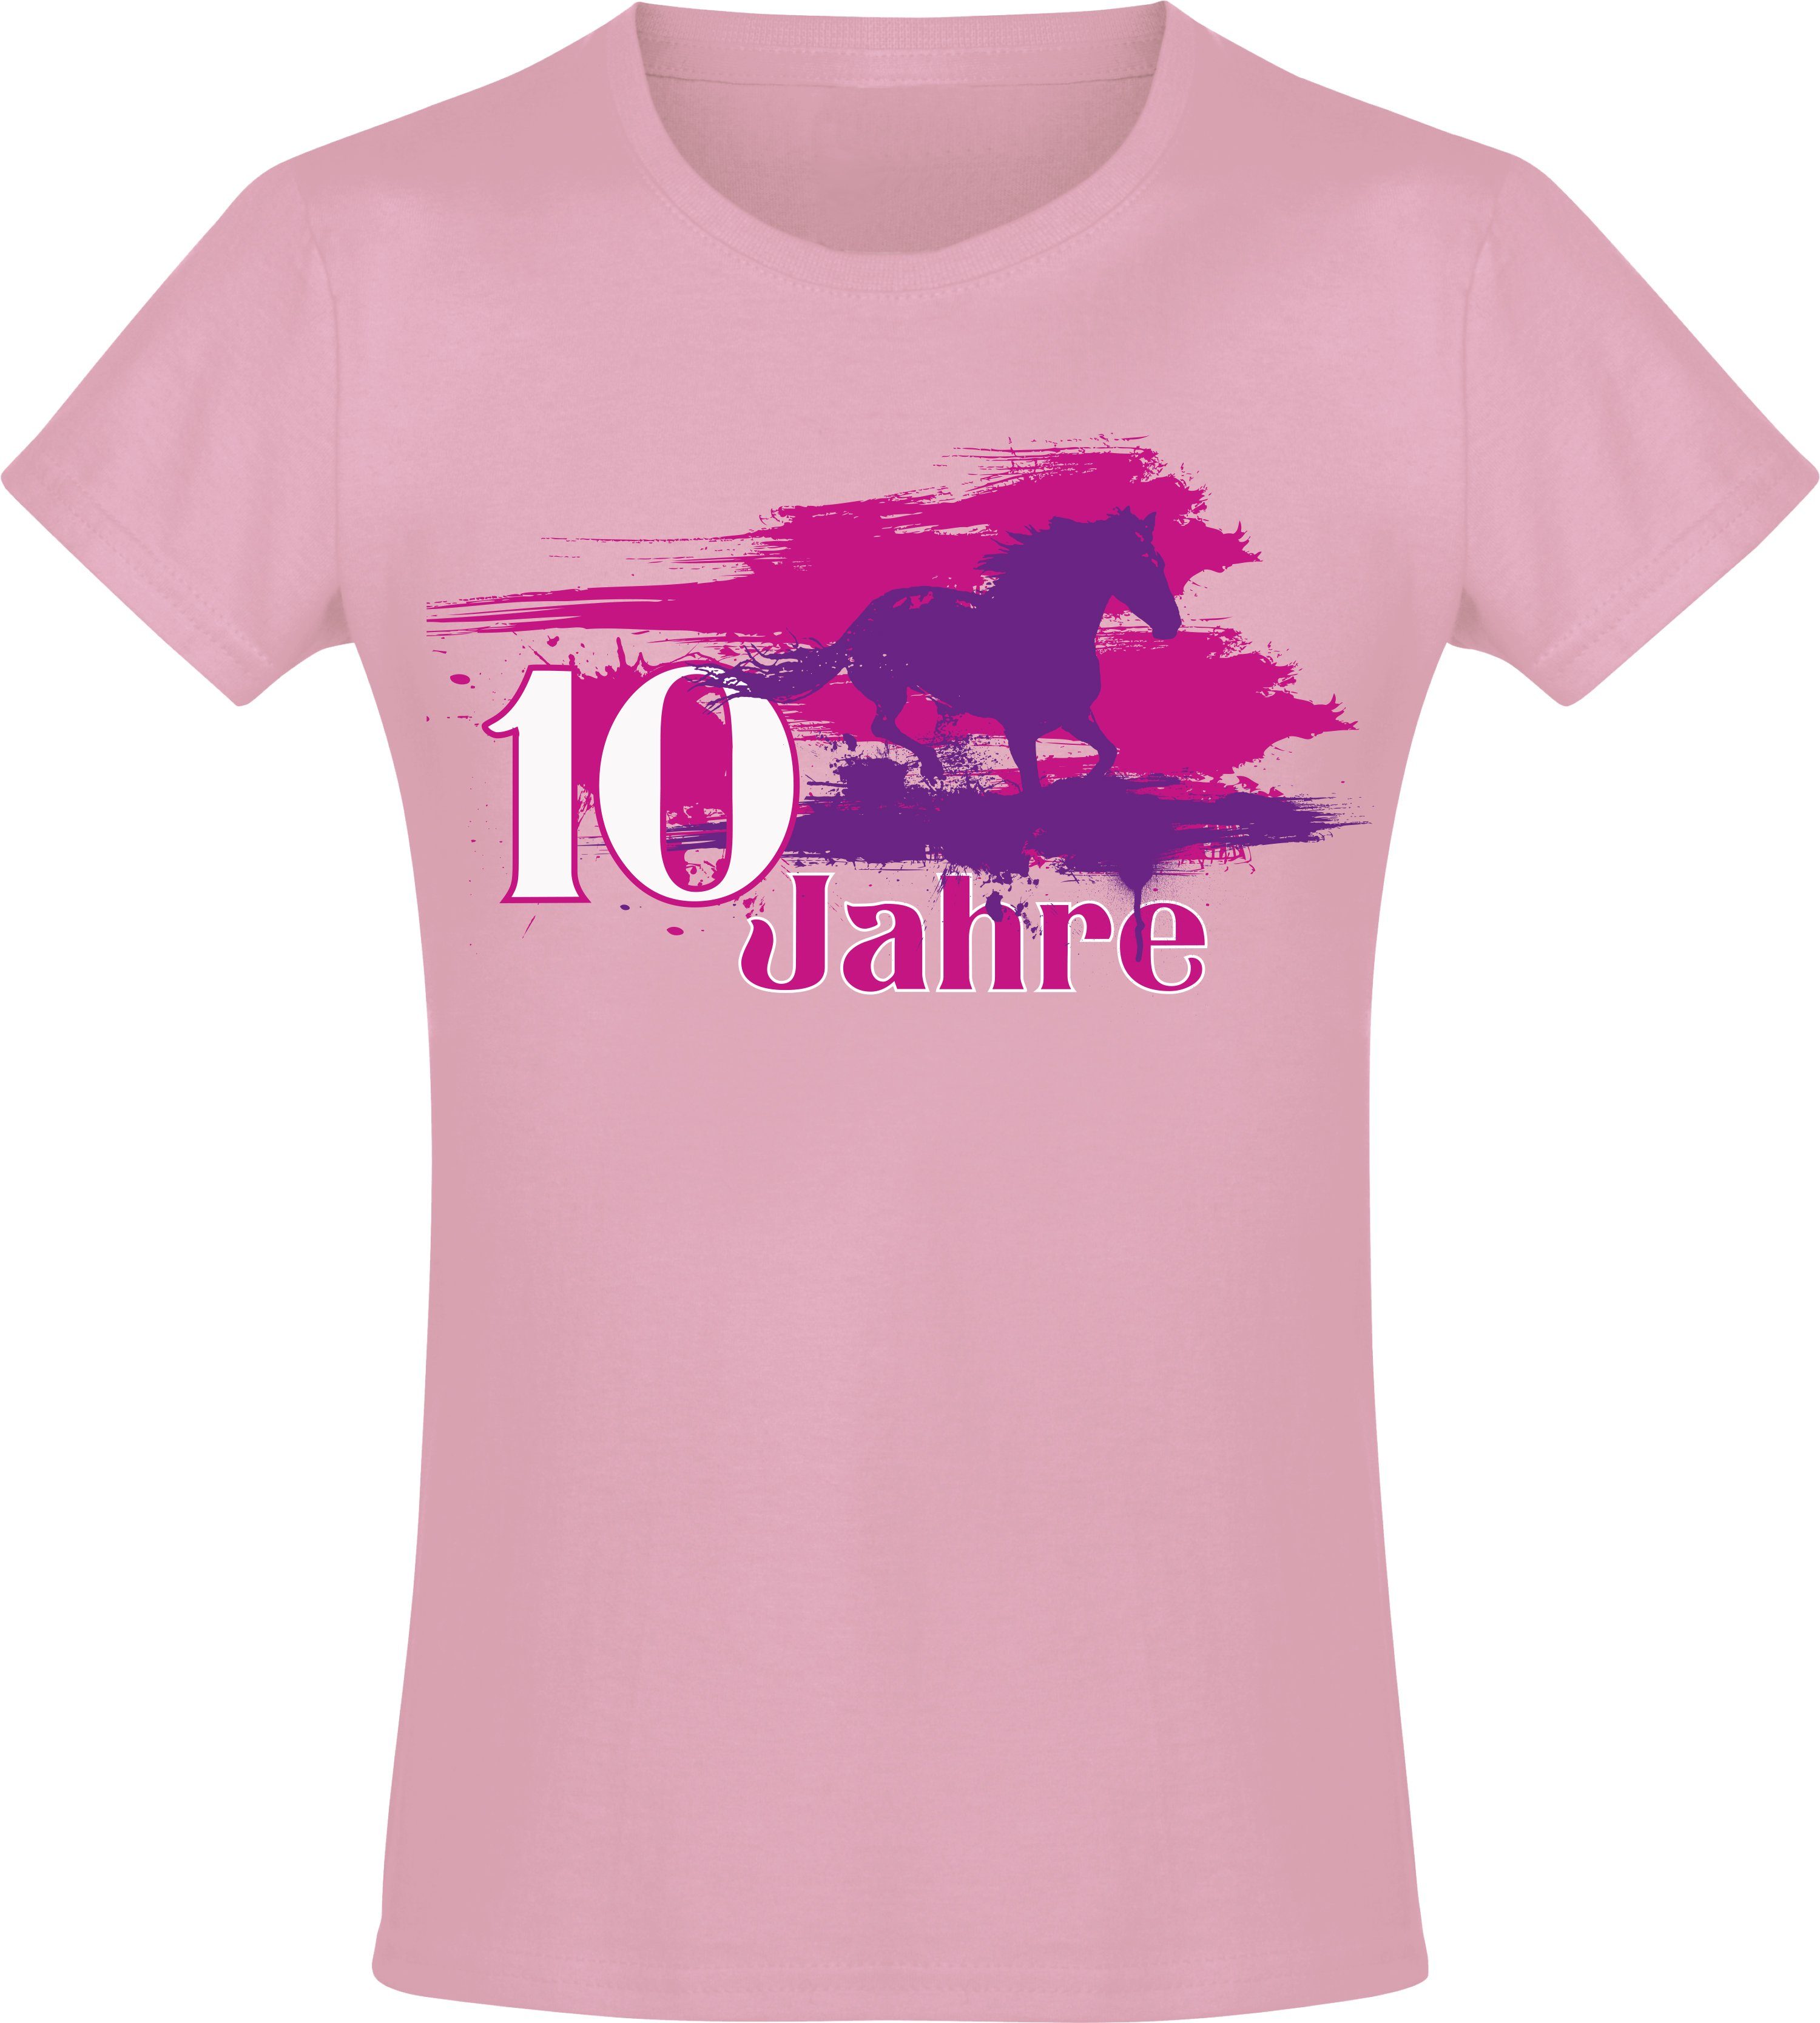 Baddery Print-Shirt Geburtstagsgeschenk für Mädchen : Geburtstagspferd 10 Jahre, hochwertiger Siebdruck, aus Baumwolle